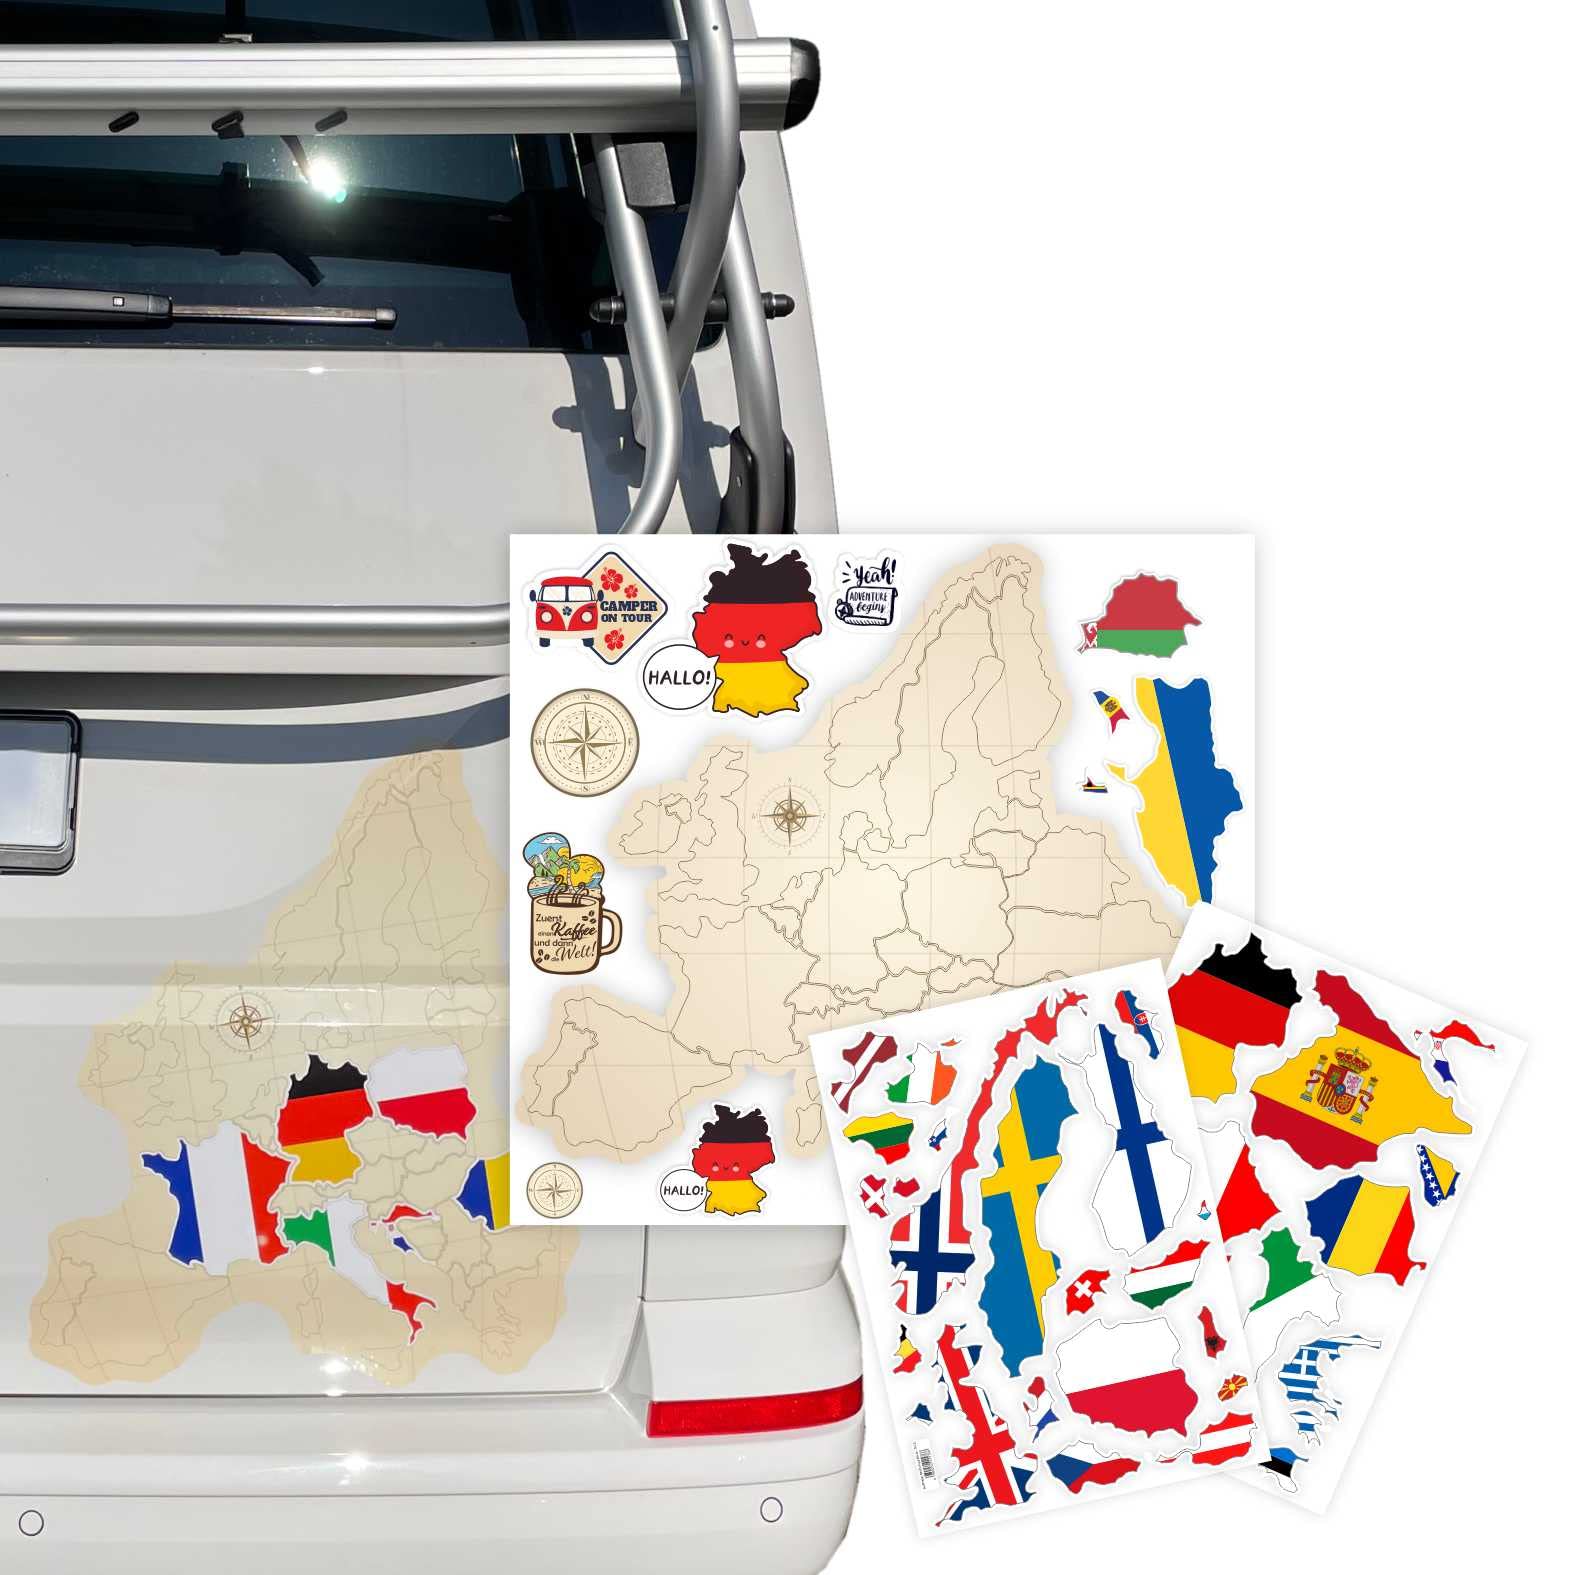 FOTOFOL Europa Karte Aufkleber Set zum Aufkleben - für Auto, Fahrzeuge, Möbel, Tür, Wand, Fenster, Spiegel - perfekt für VW Bulli California von FOTOFOL